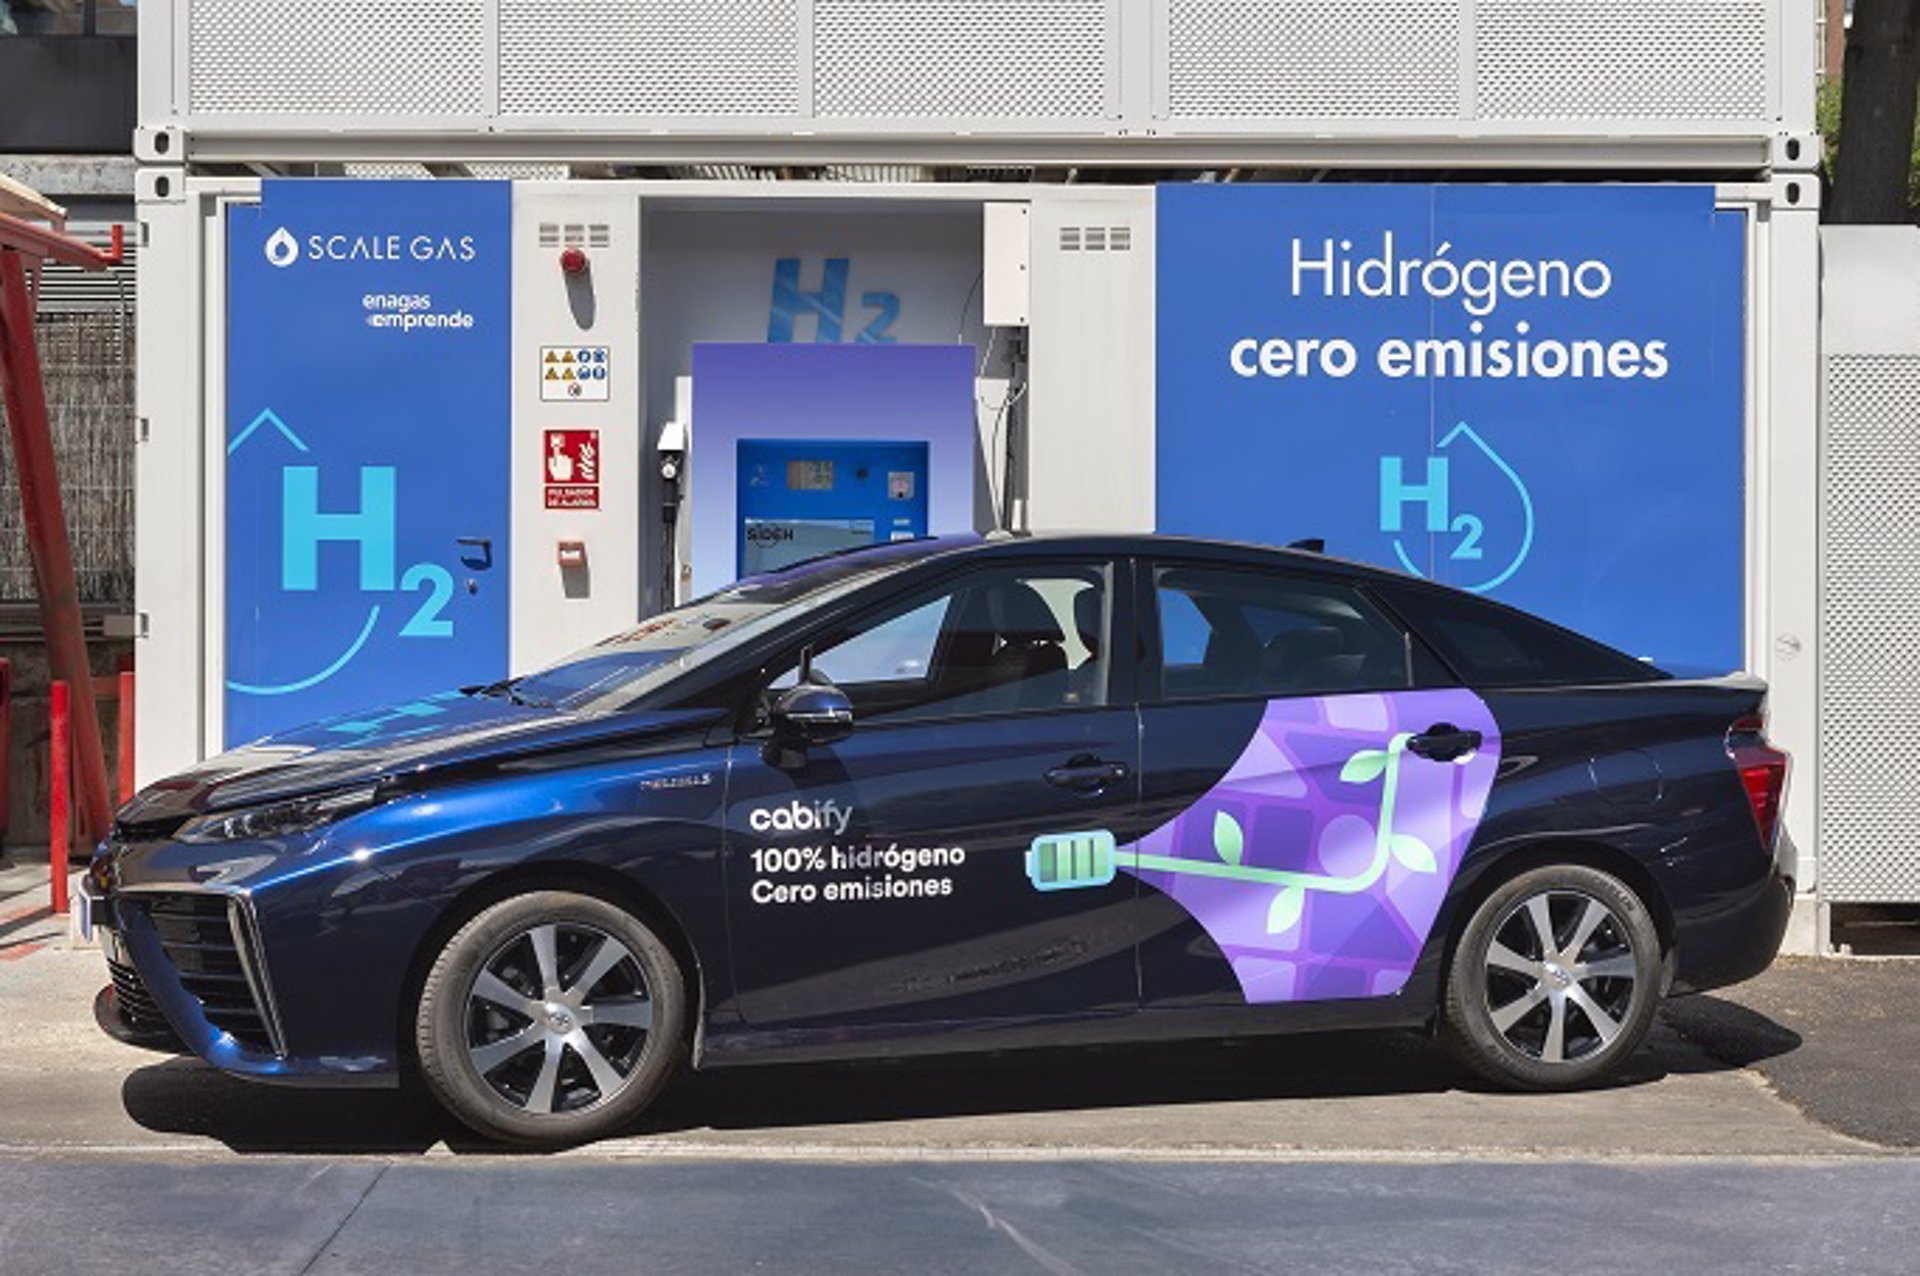 Cabify apuesta por Toyota Mirai para la primera flota VTC propulsada por hidrógeno en España